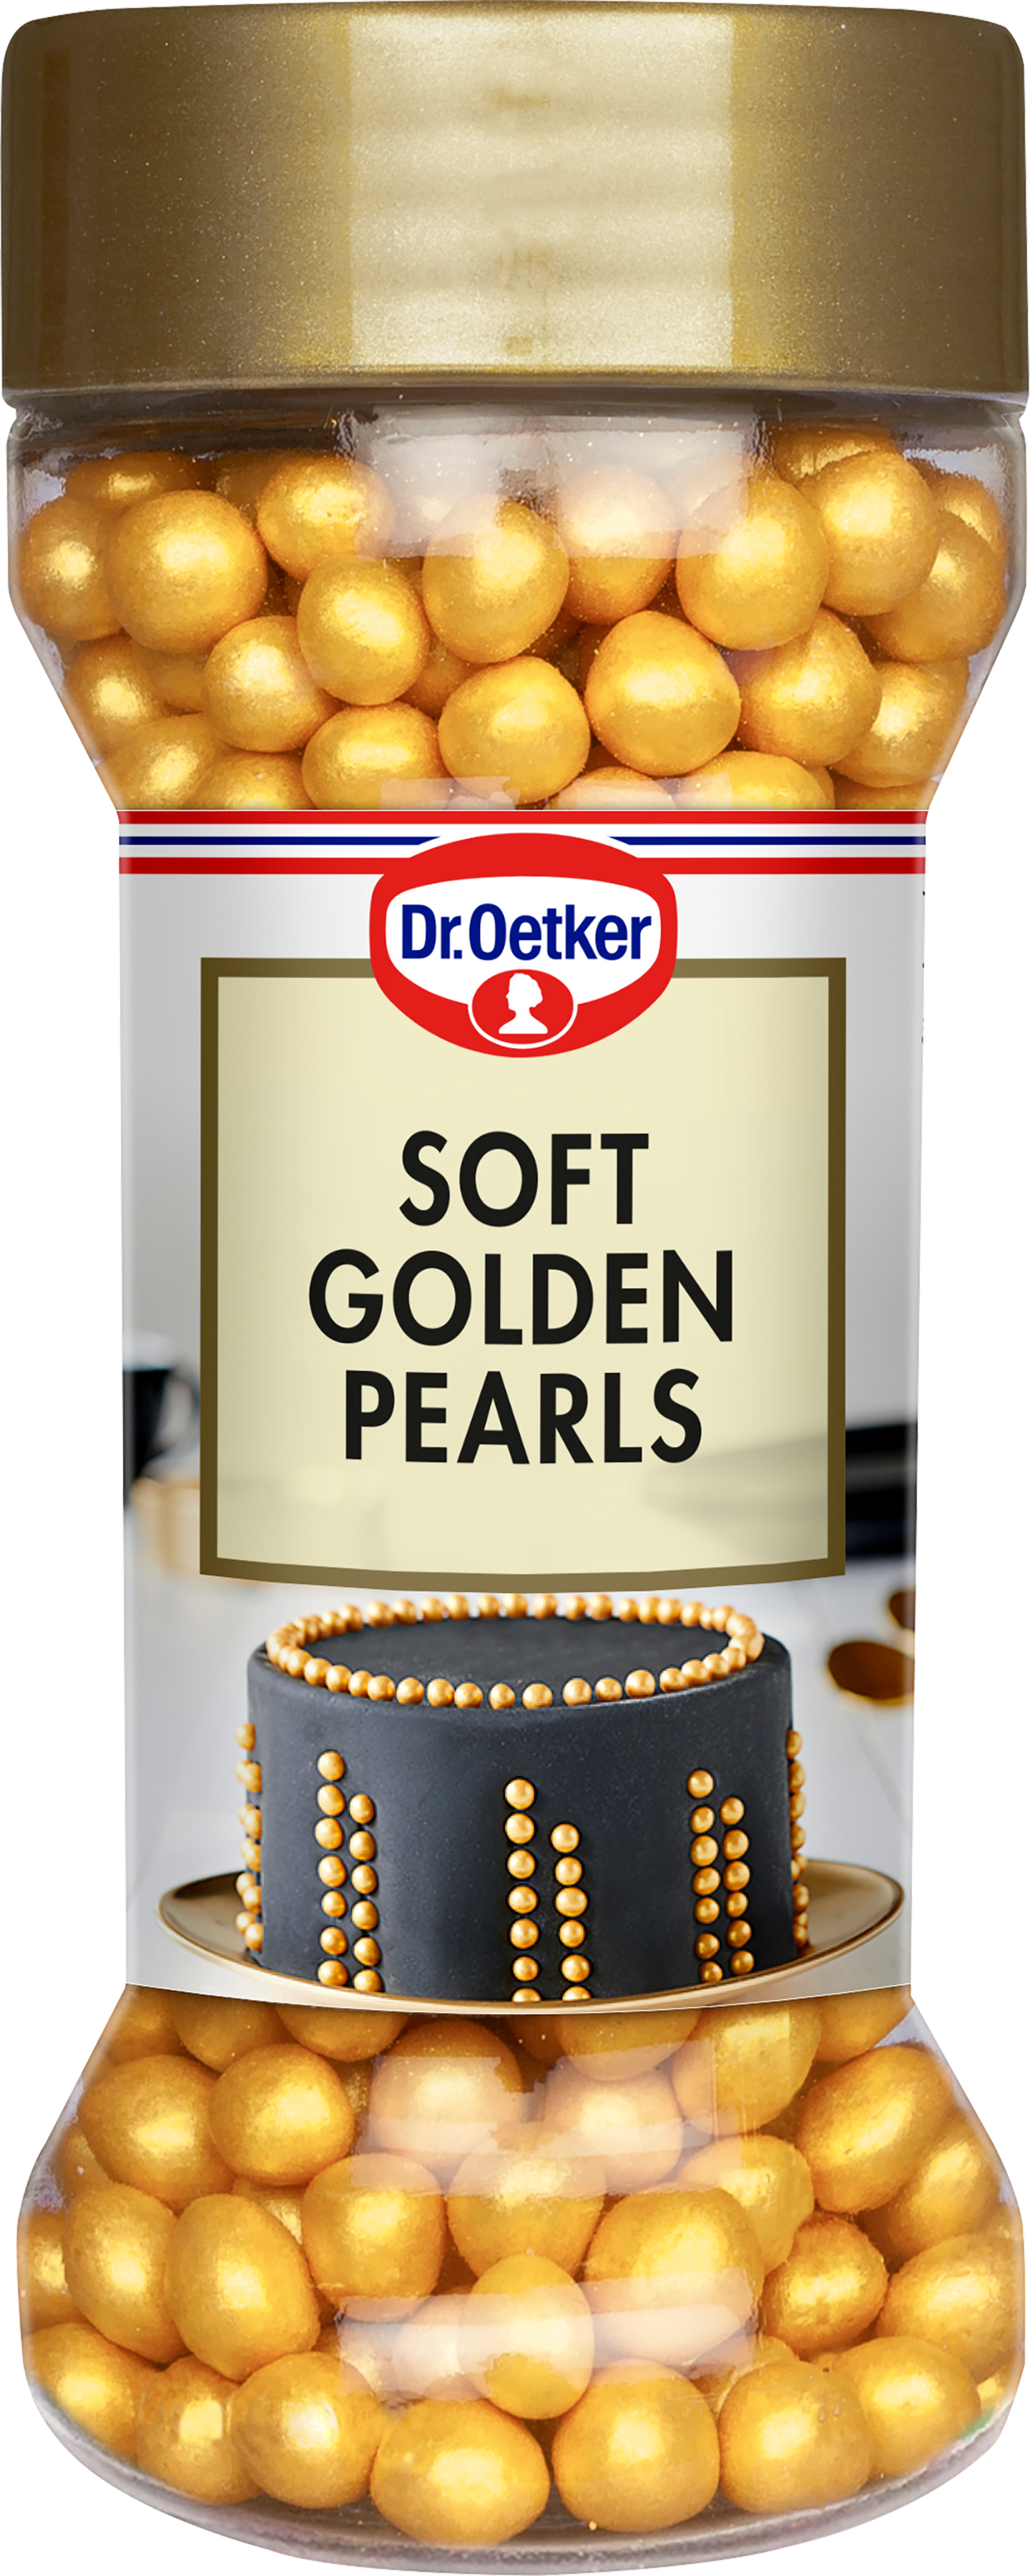 Dr.Oetker 42g soft golden pearls